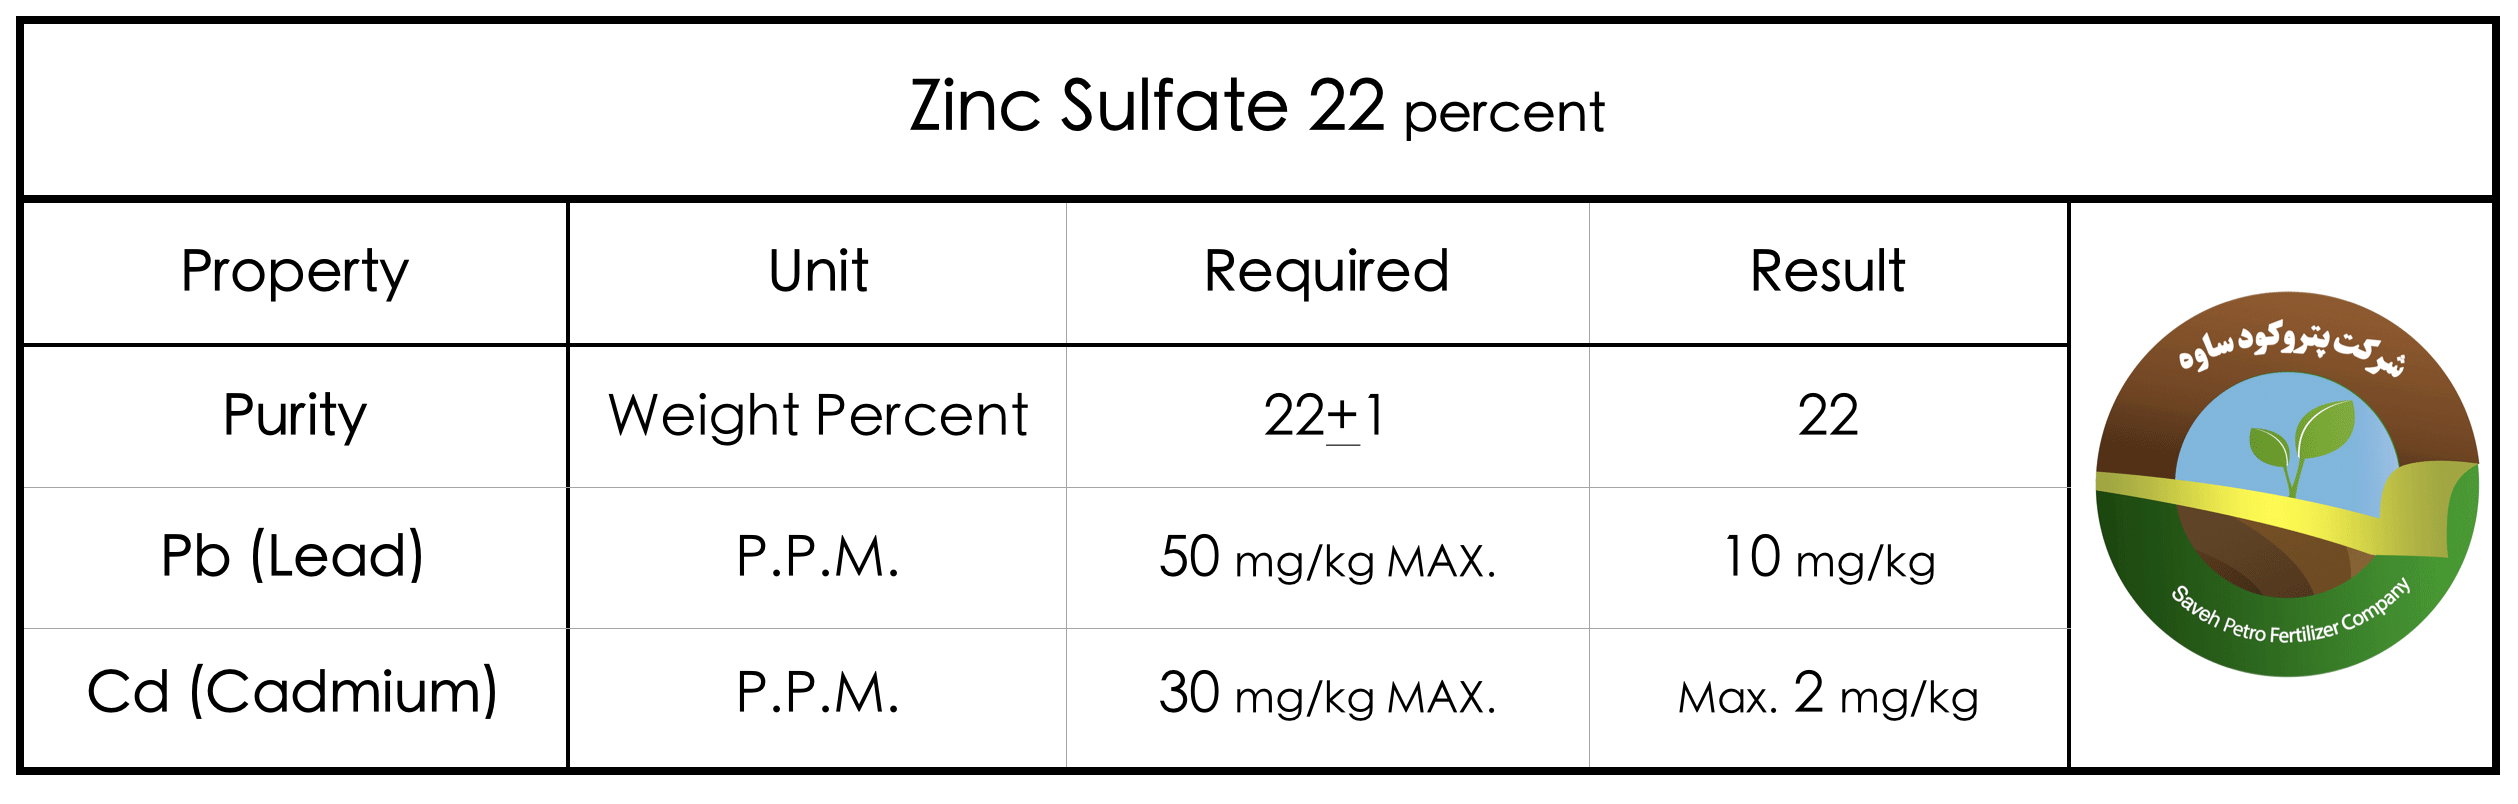 Zinc Sulfate 22